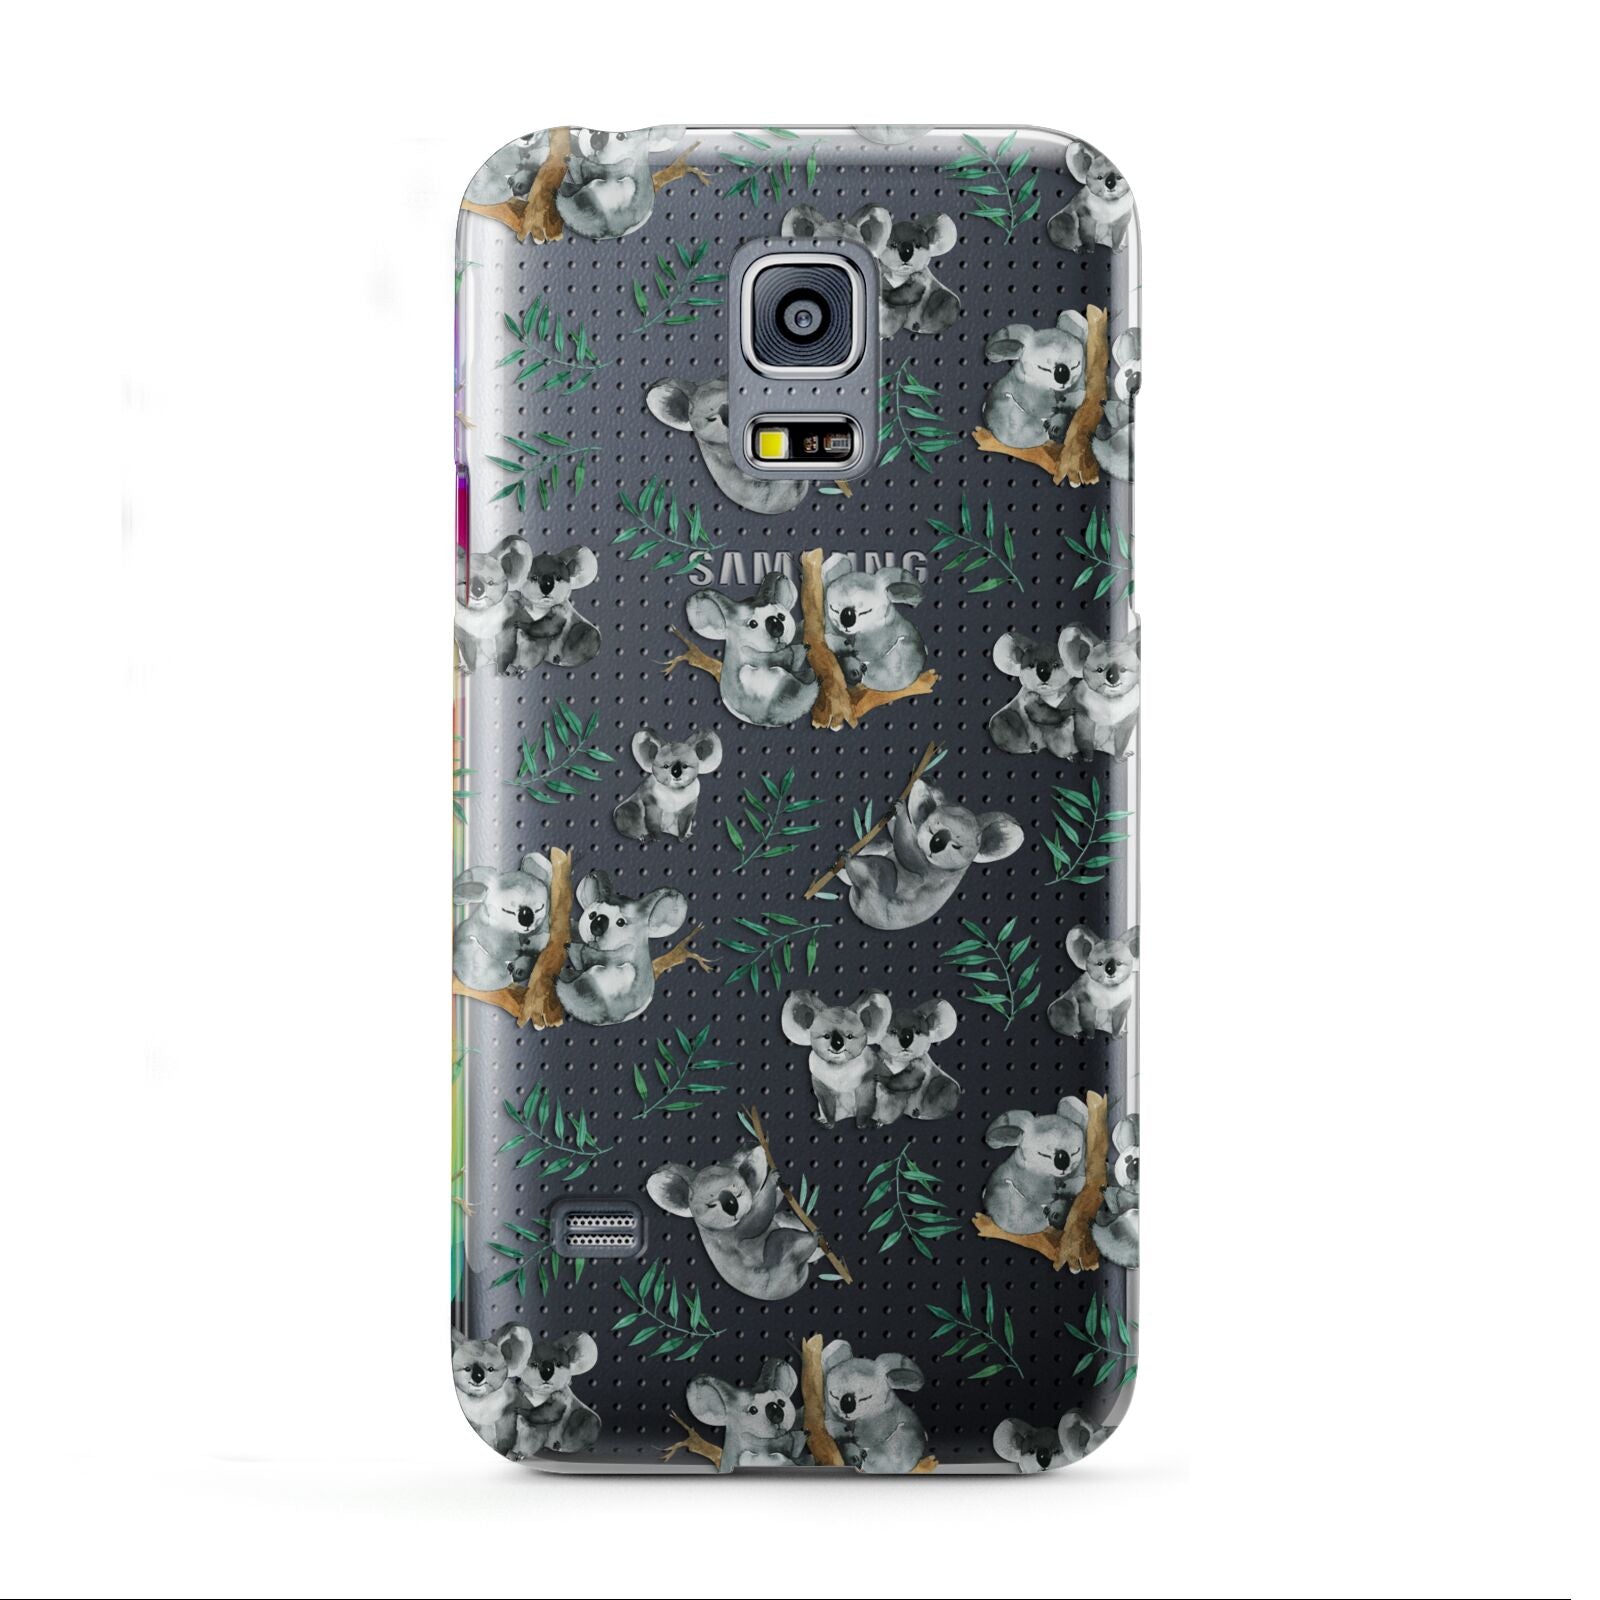 Koala Bear Samsung Galaxy S5 Mini Case